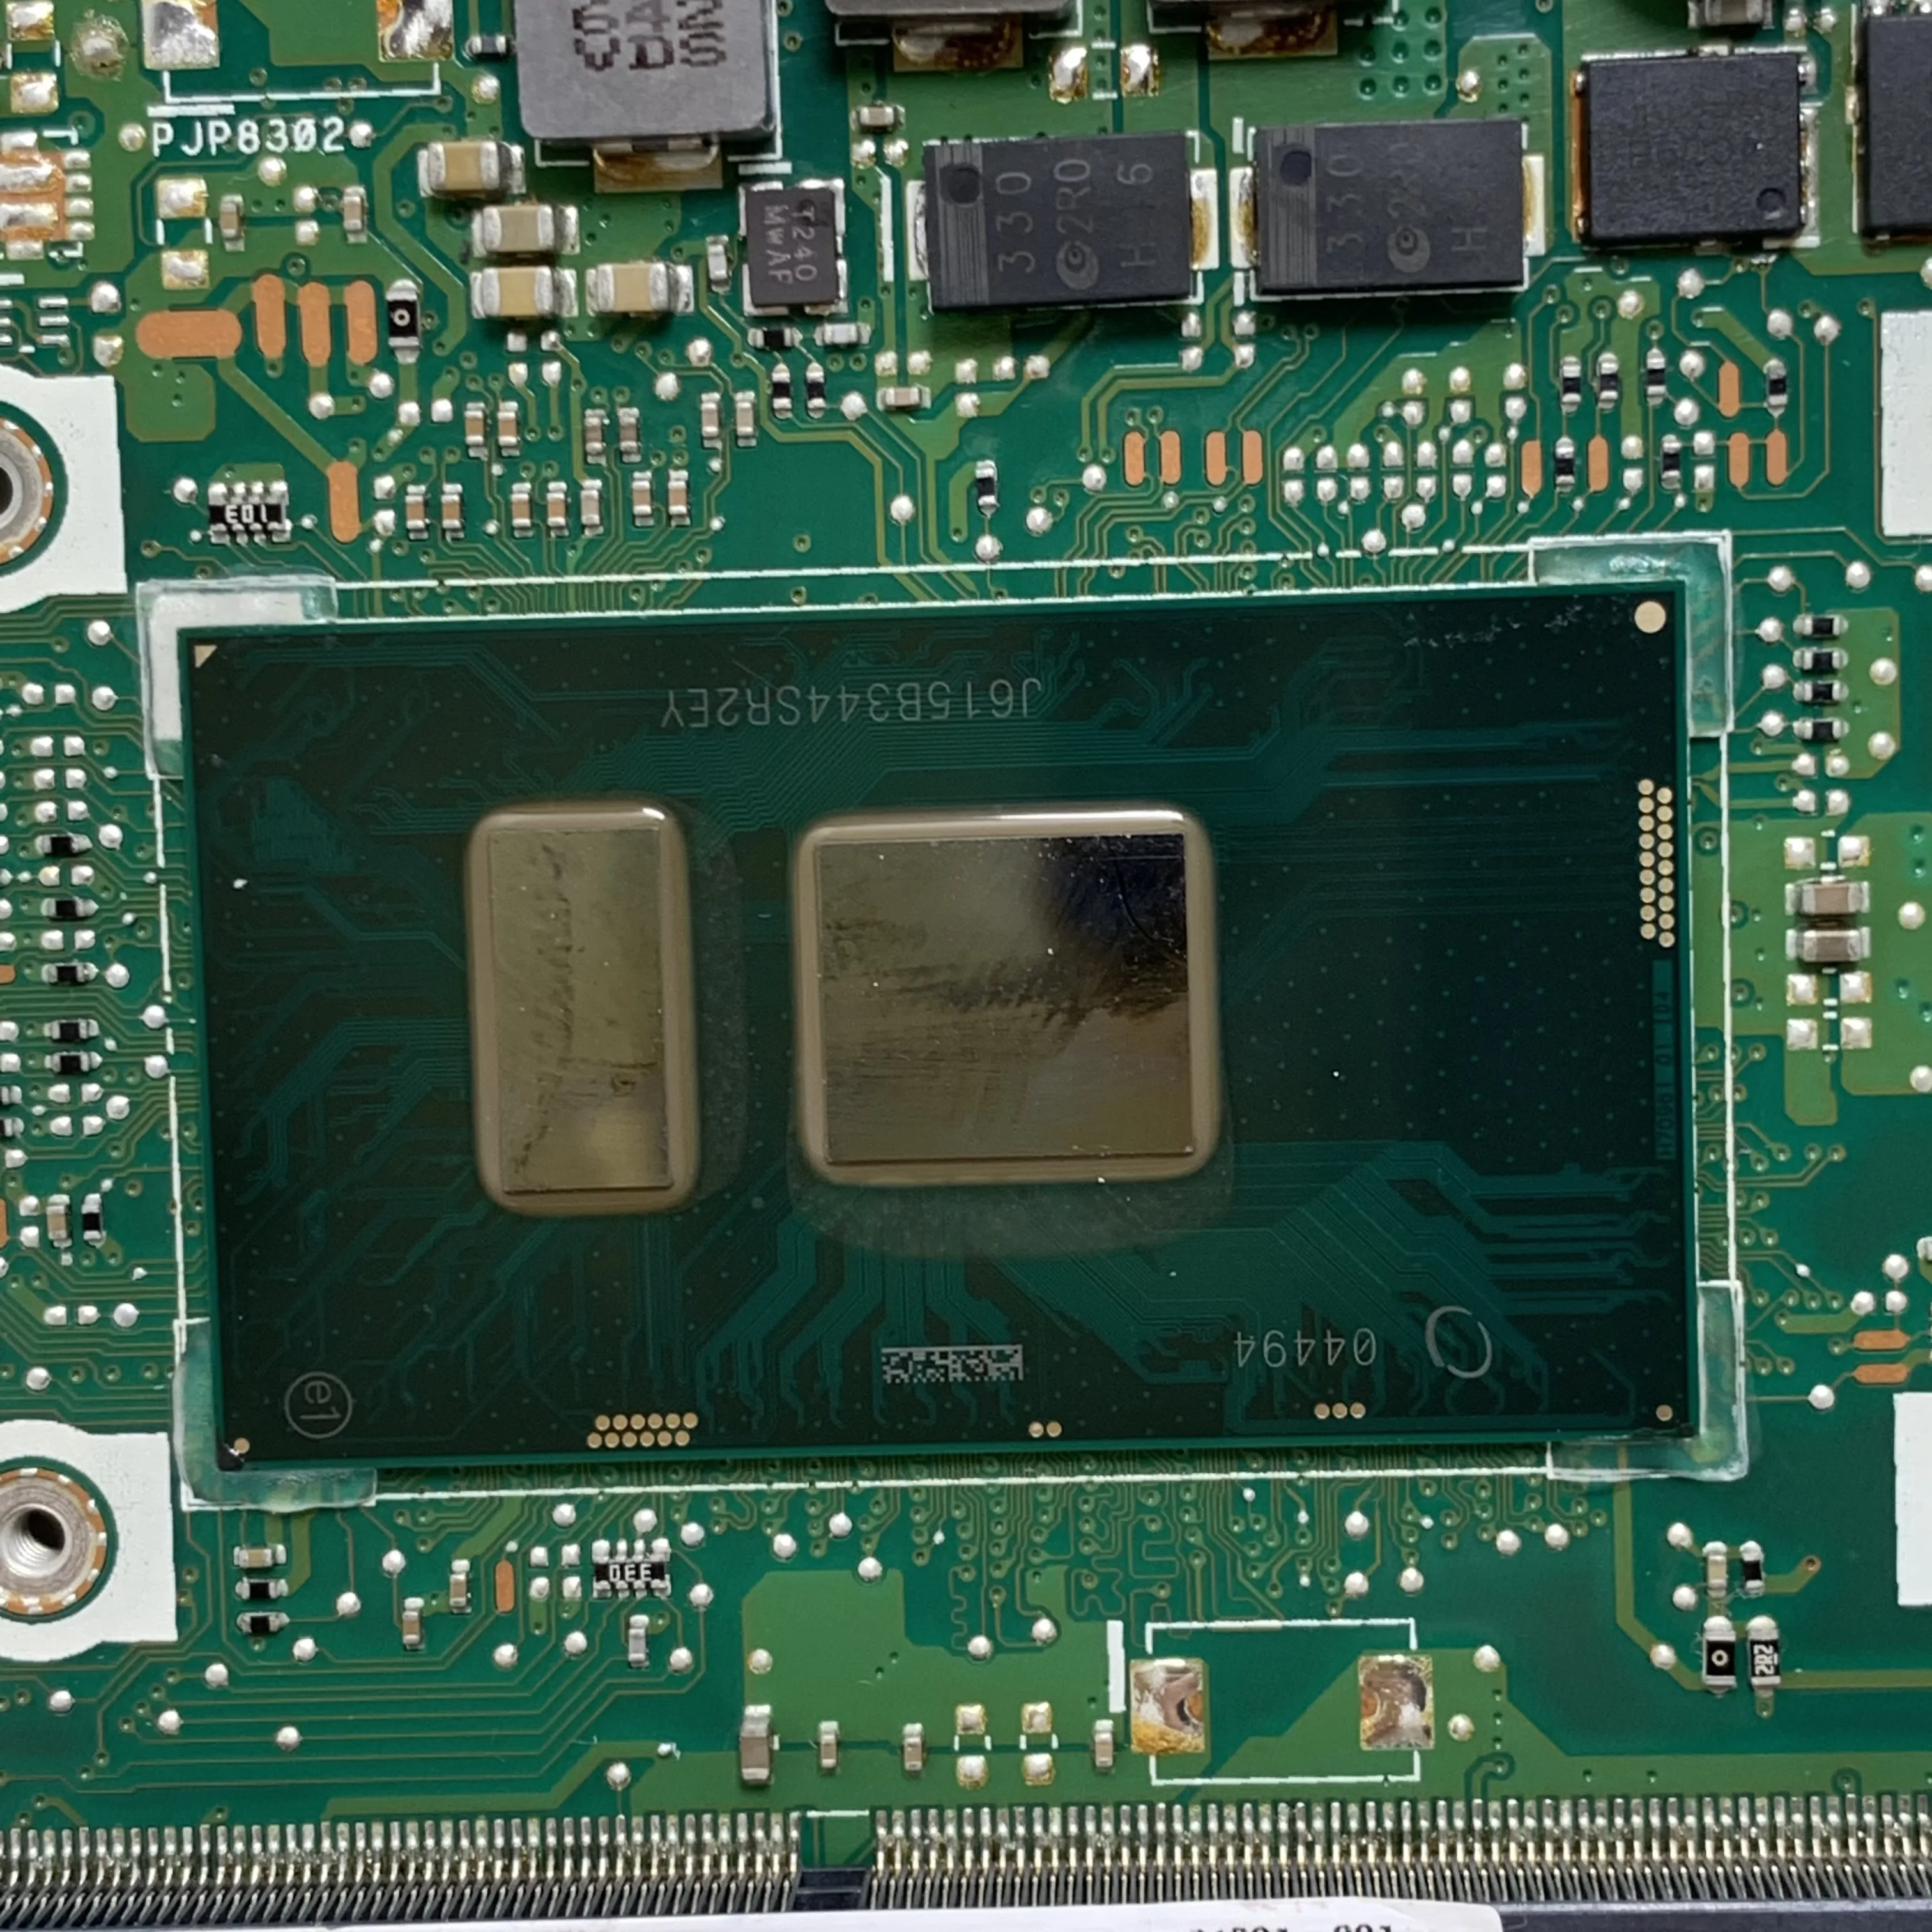 X456UV REV.2.0 С процесор SR2EY I5-6200U дънна Платка за лаптоп ASUS X456UV дънна Платка N16V-GMR1-S-A2 100% Напълно тествана, работи добре